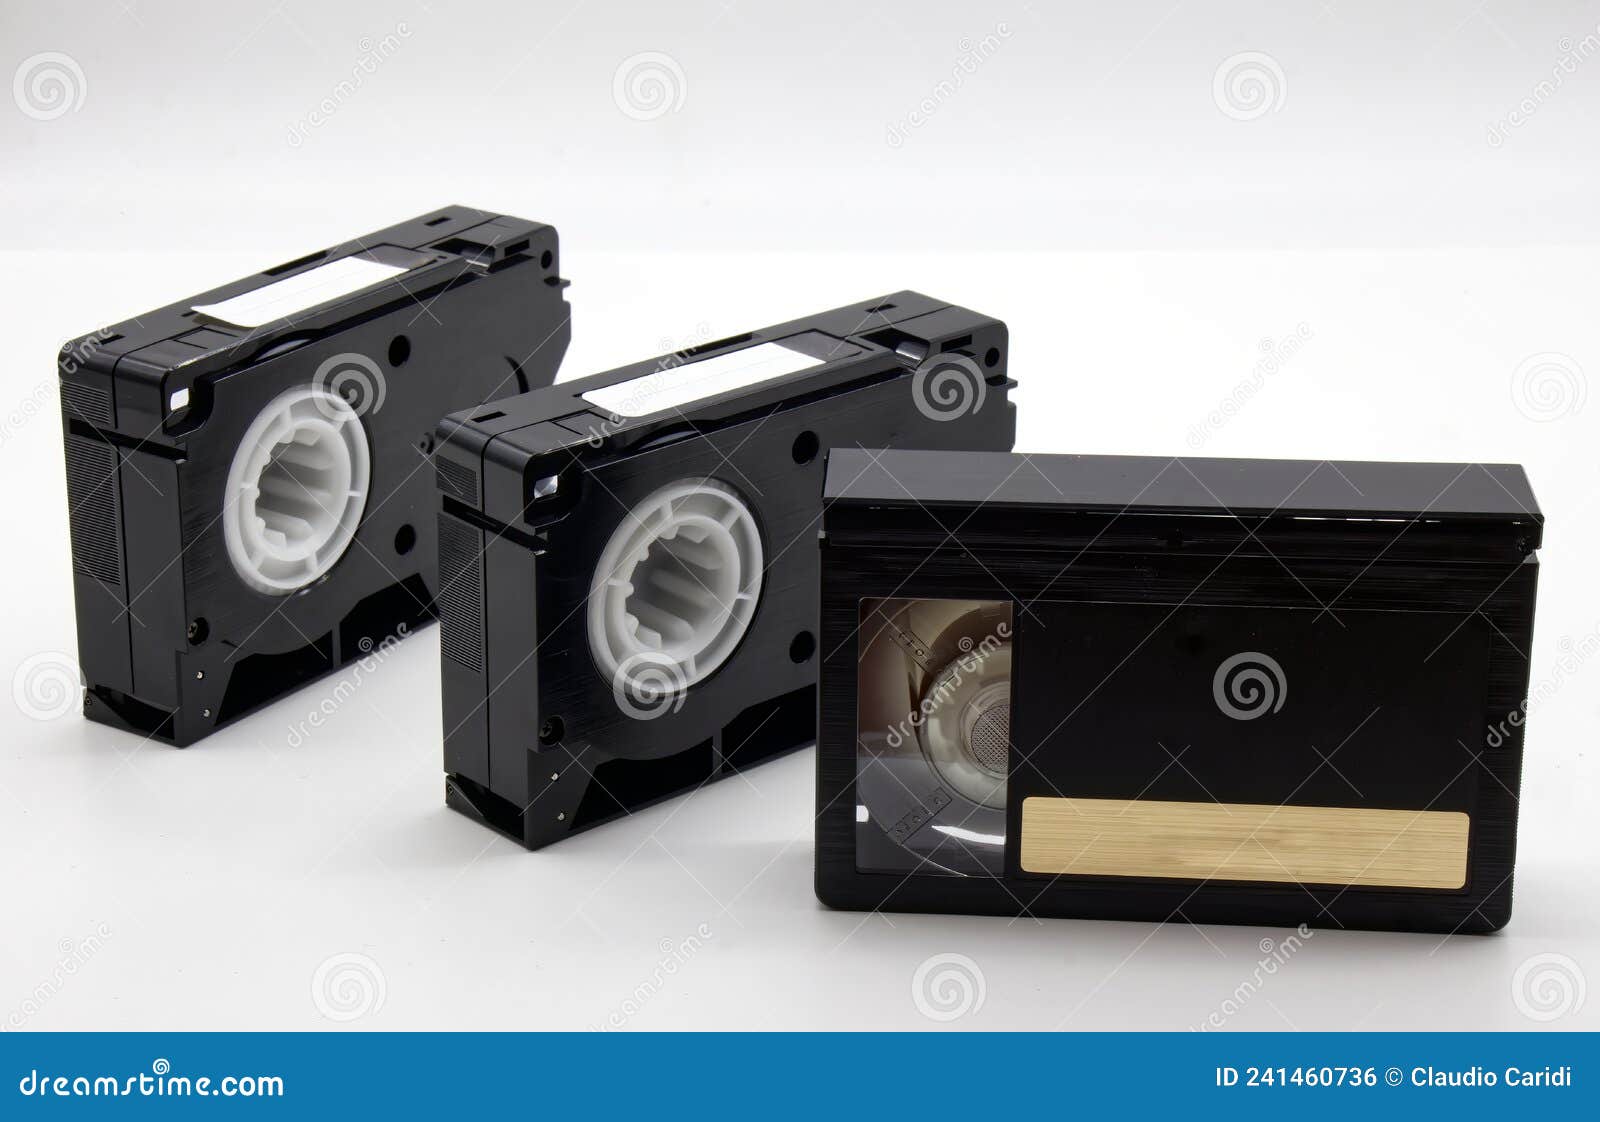 https://thumbs.dreamstime.com/z/vintage-mini-dv-video-tape-cassette-isolated-white-background-retro-style-technology-s-vintage-mini-dv-video-tape-241460736.jpg